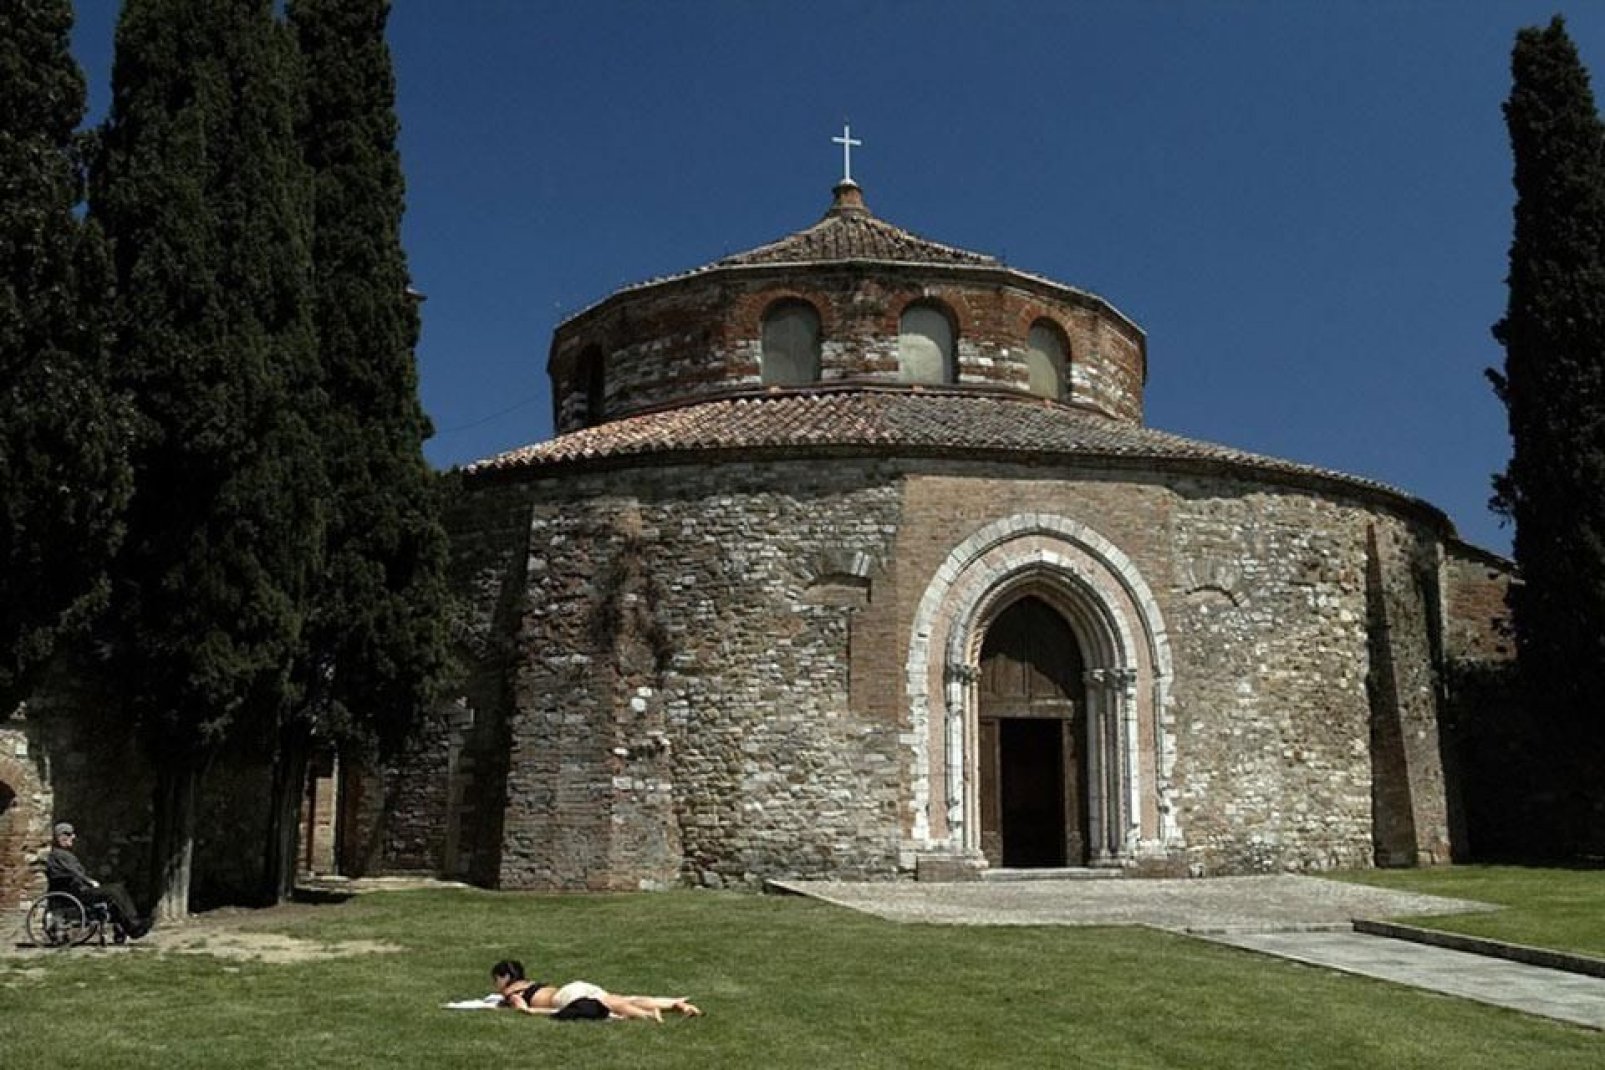 Chiesa di Sant'Angelo ist eine frühchristliche Kirche aus dem 5. Jahrhundert und eines der seltenen religiösen Bauwerke mit rundem Grundriss.